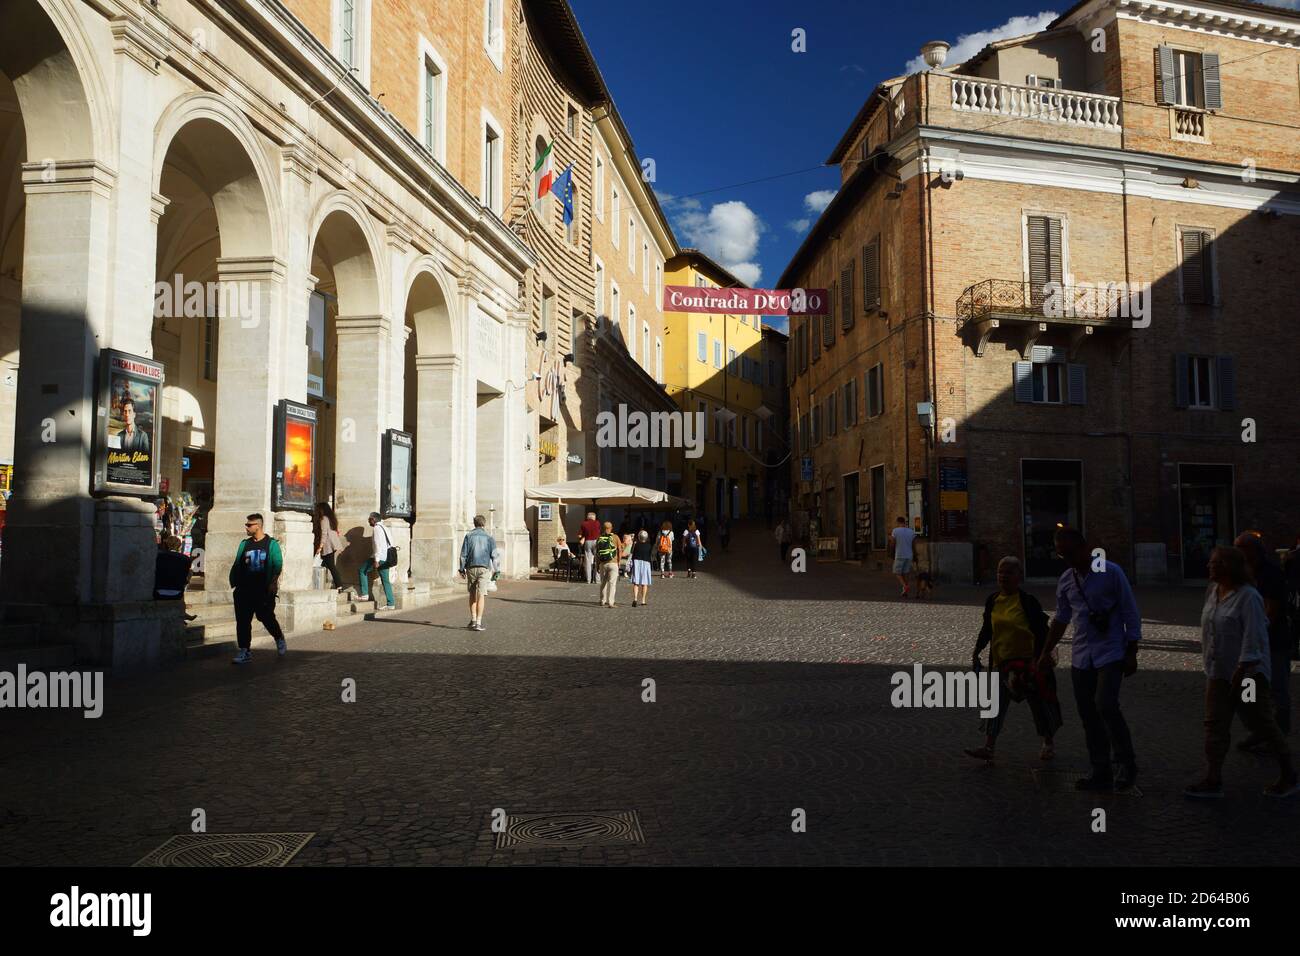 La hermosa ciudad antigua de estudiantes de Urbino. Región Marche, Provincia Pesaro y Urbino (PU), Urbino, Italia. Foto de stock